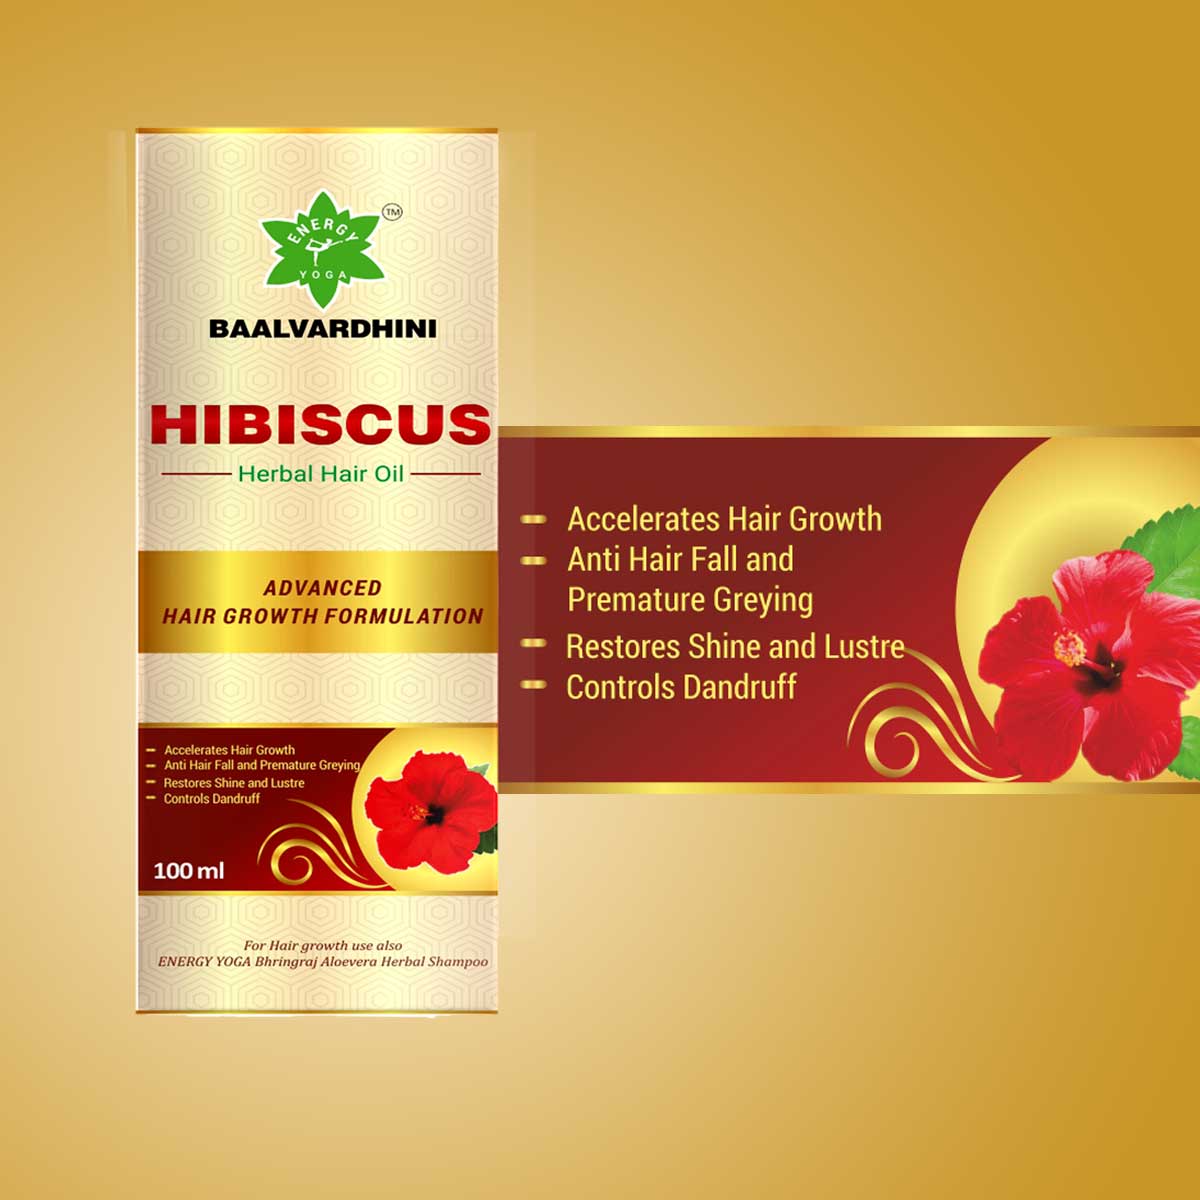 Baalvardhini Hibiscus Herbal Hair Oil